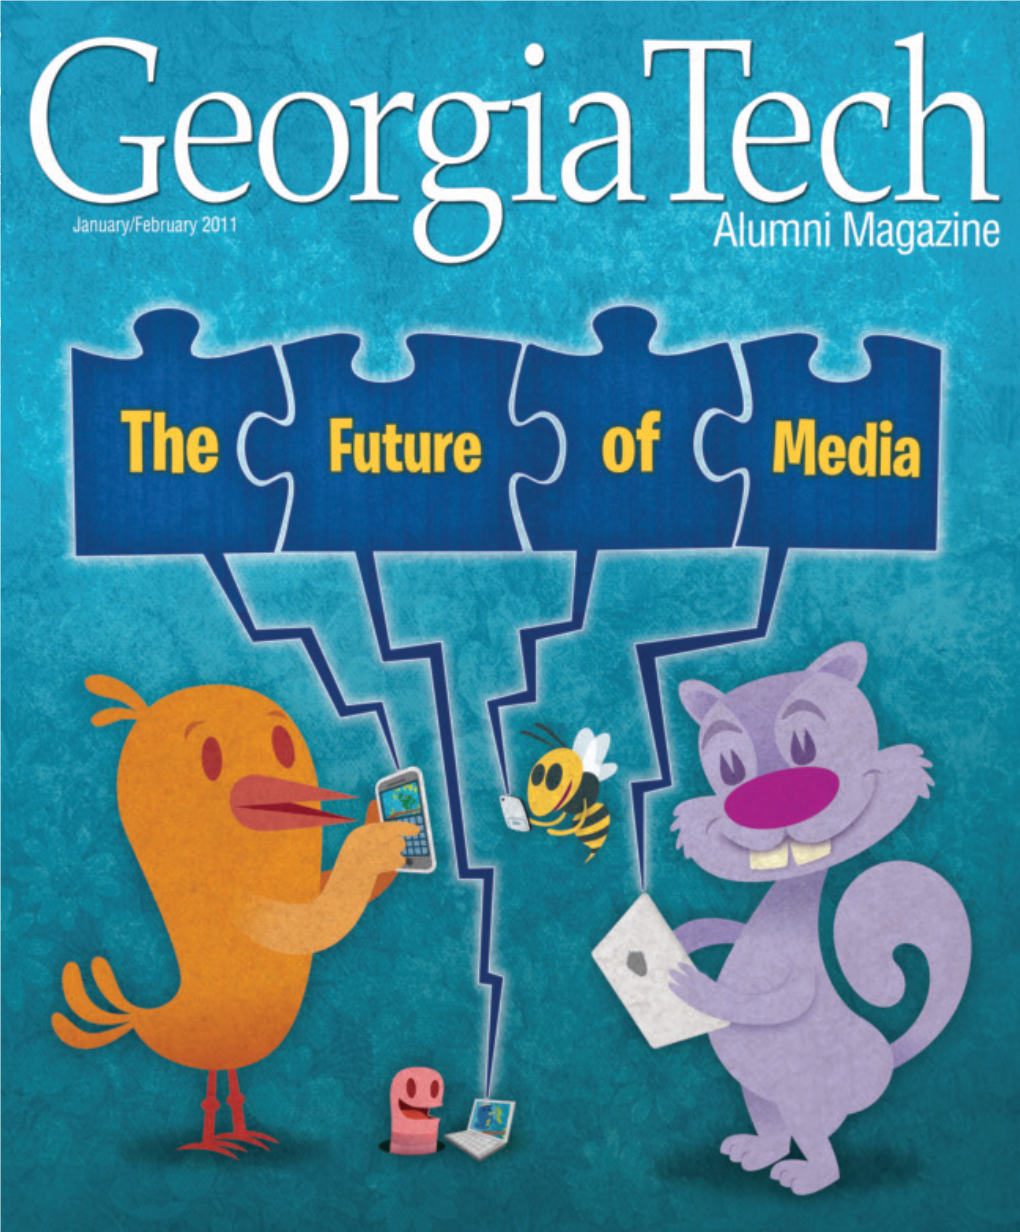 Georgia Tech Alumni Magazine • January/February 2011 Contents.Indd 2 12/15/10 8:05 AM Contents.Indd 3 12/15/10 8:01 AM Contents.Indd 4 12/15/10 8:01 AM Features